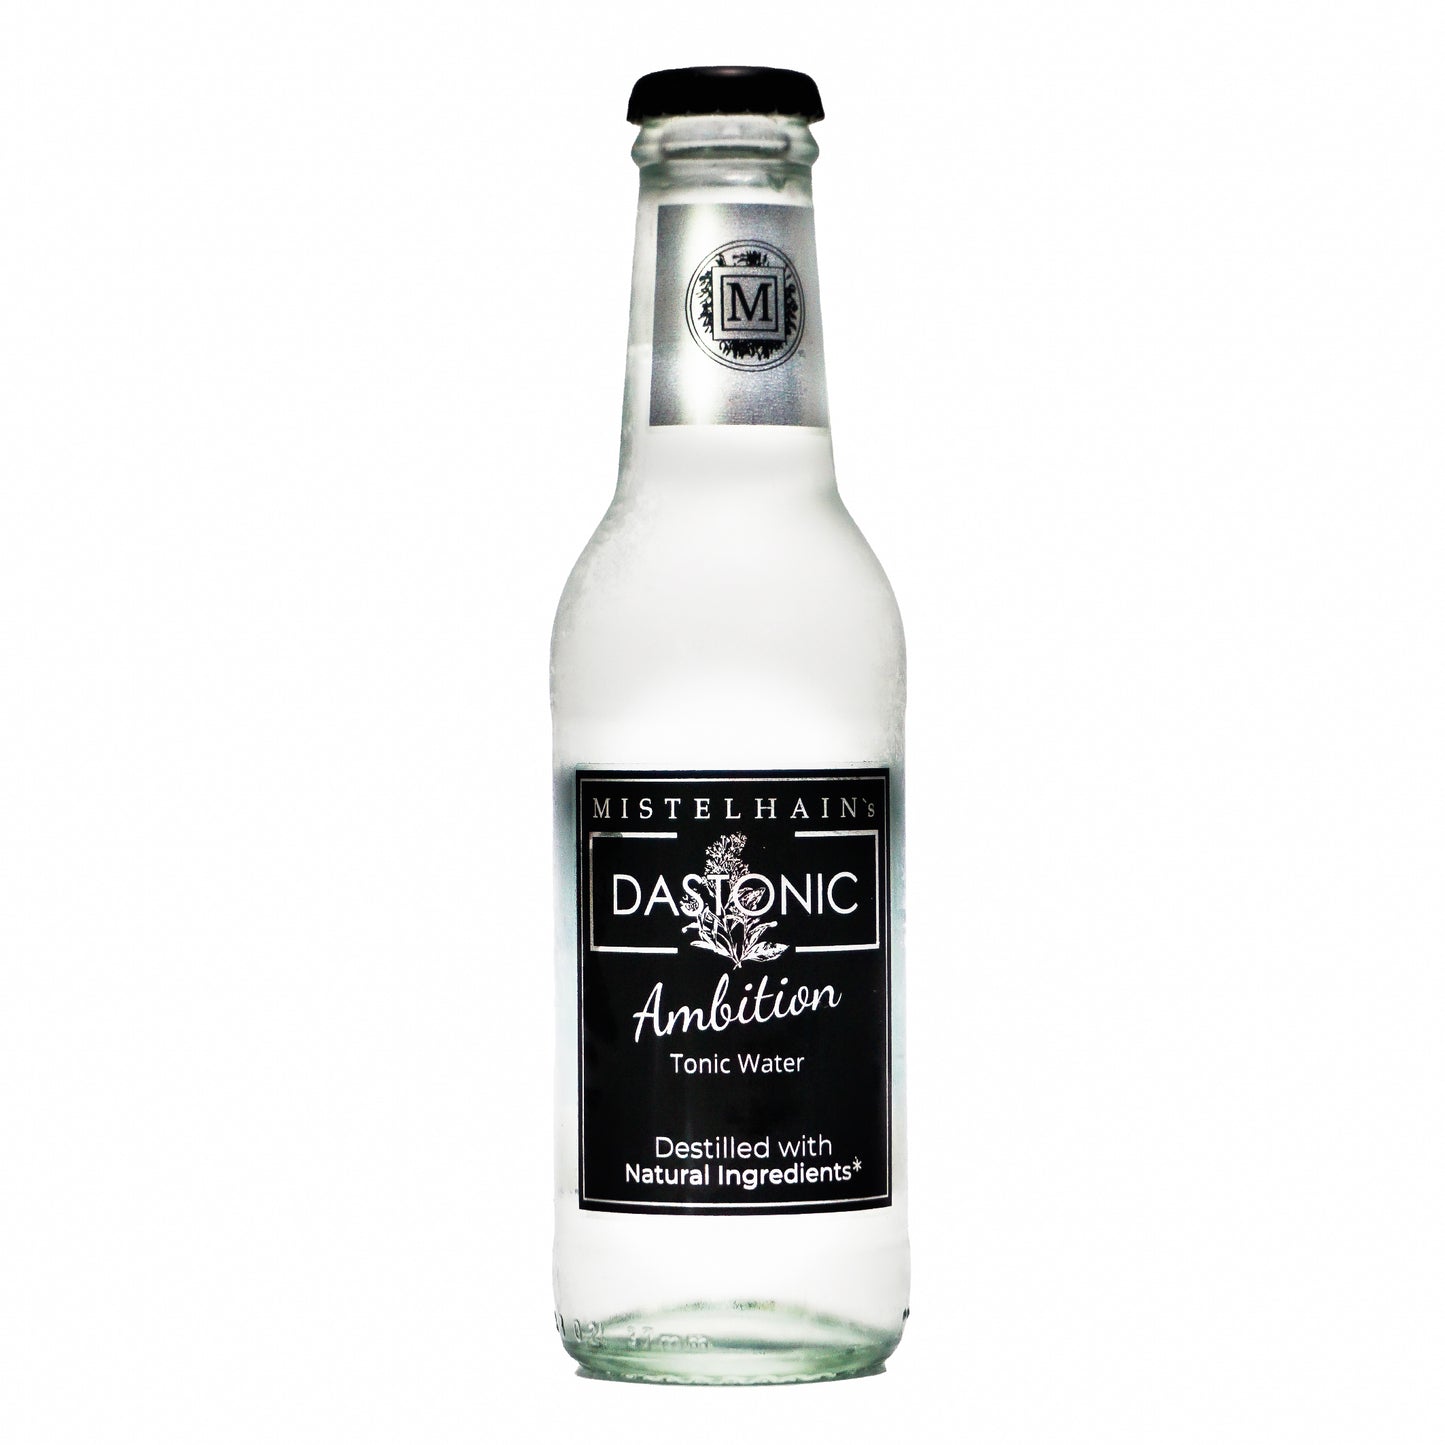 Tonic Water DASTONIC Ambition von Mistelhain in einer 200 ml Glasflasche mit schwarzen Etikett und Kronenkorken